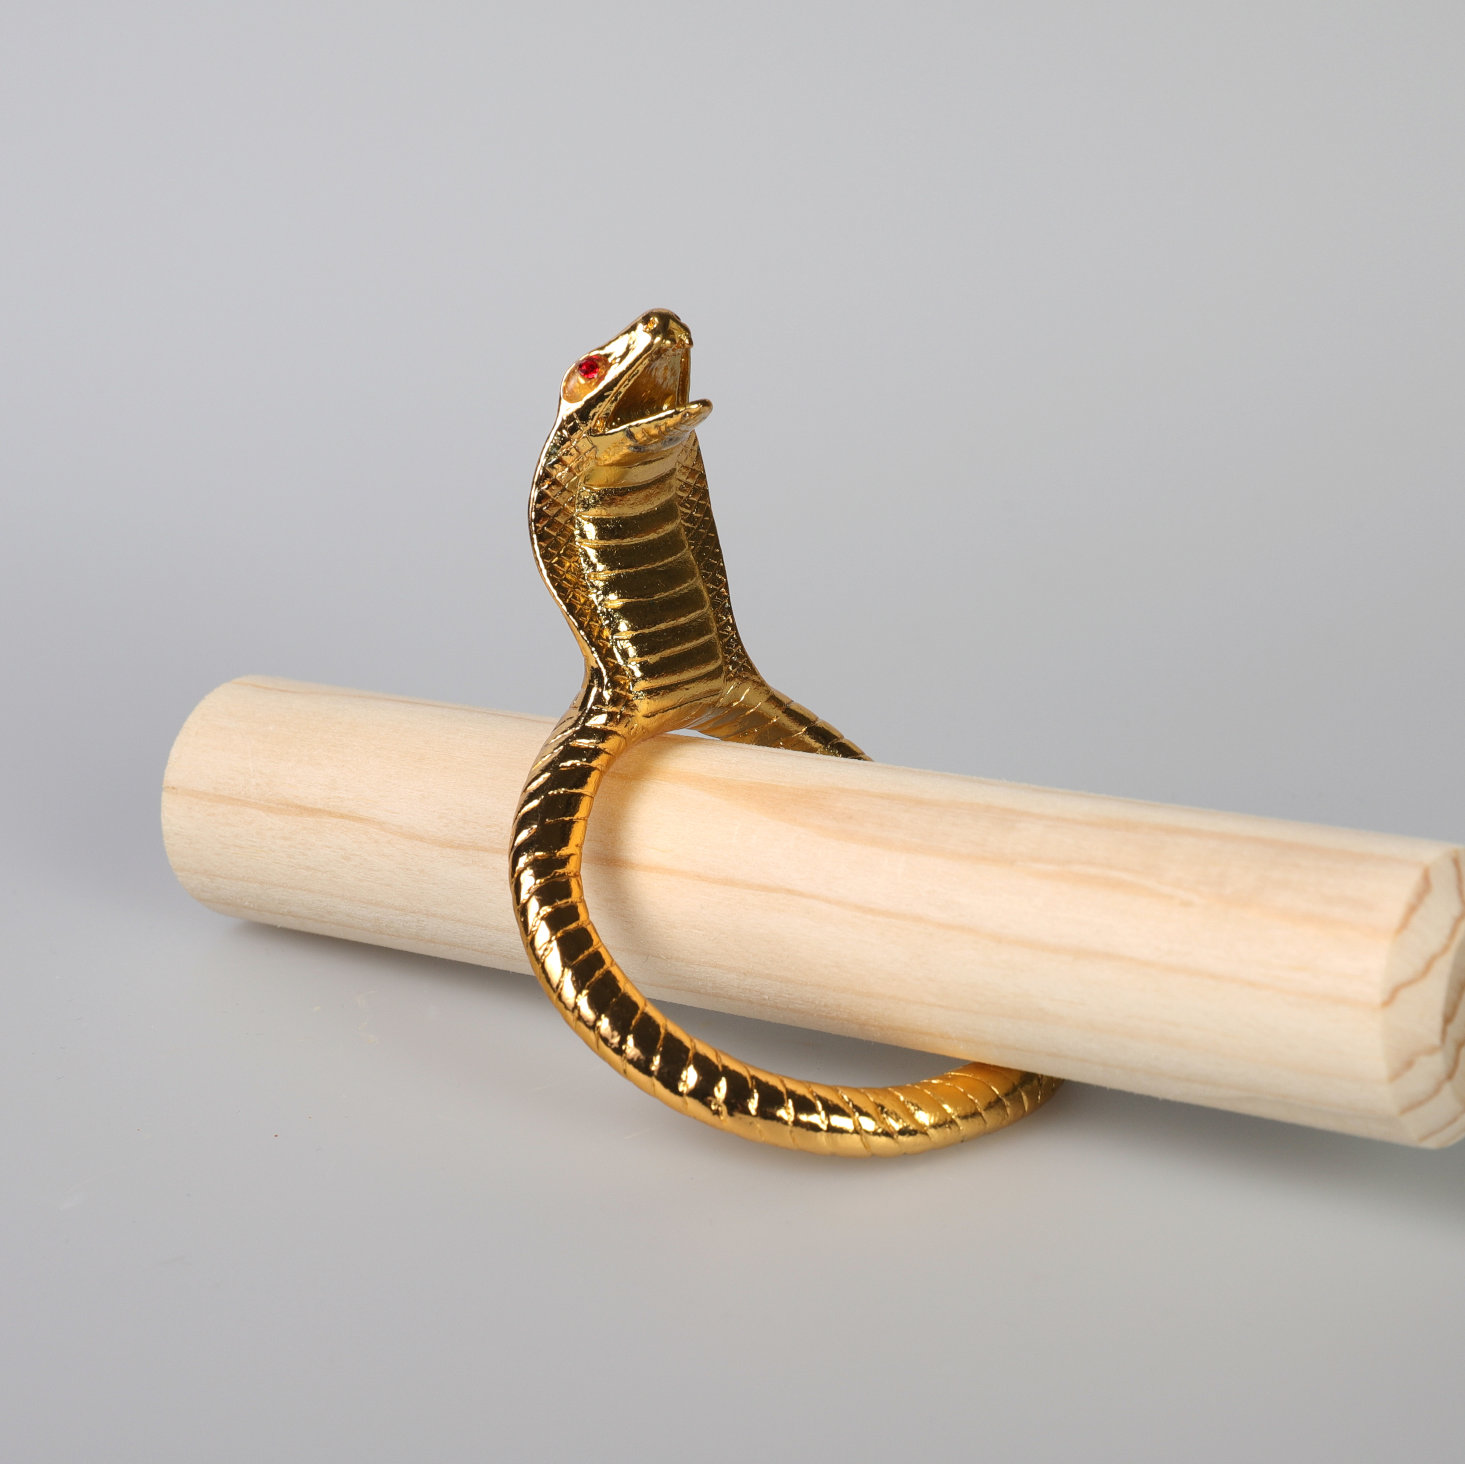 Intimschmuck Penisring in Form einer Cobra